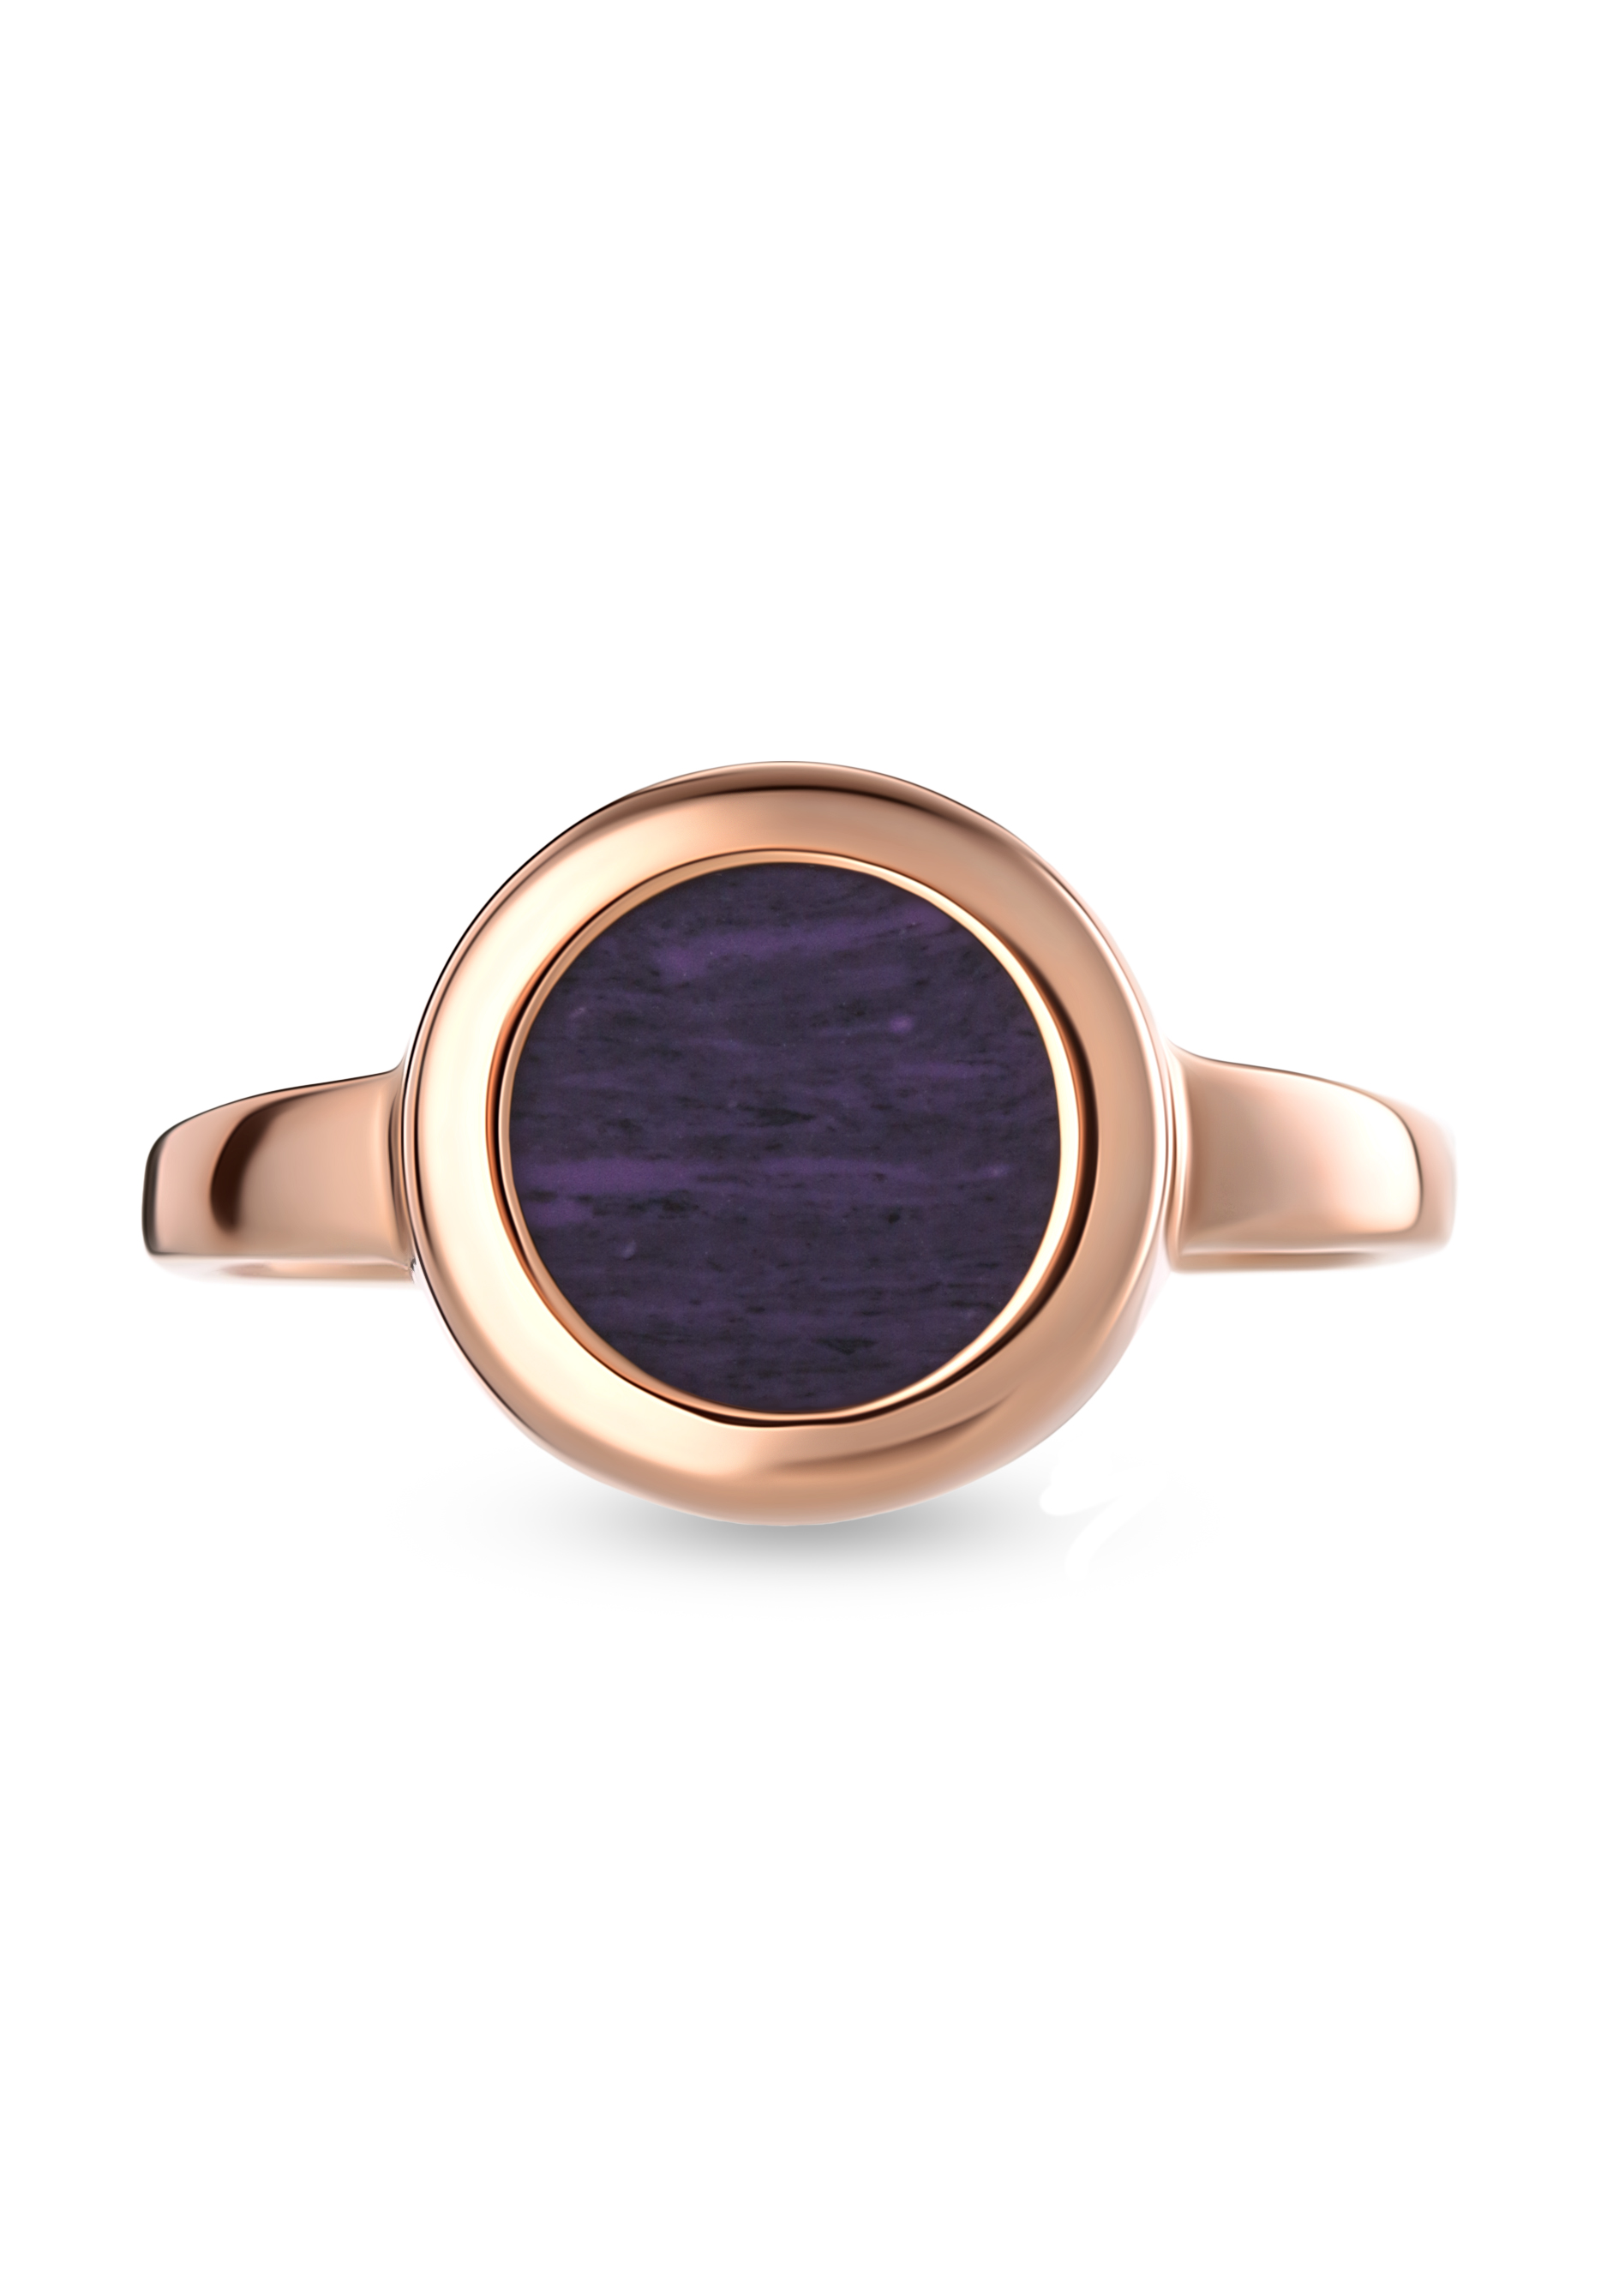 Серебряное кольцо "Блестящий вкус" Бриллианит Серебряная линия, цвет фиолетовый, размер 17 солитер - фото 2